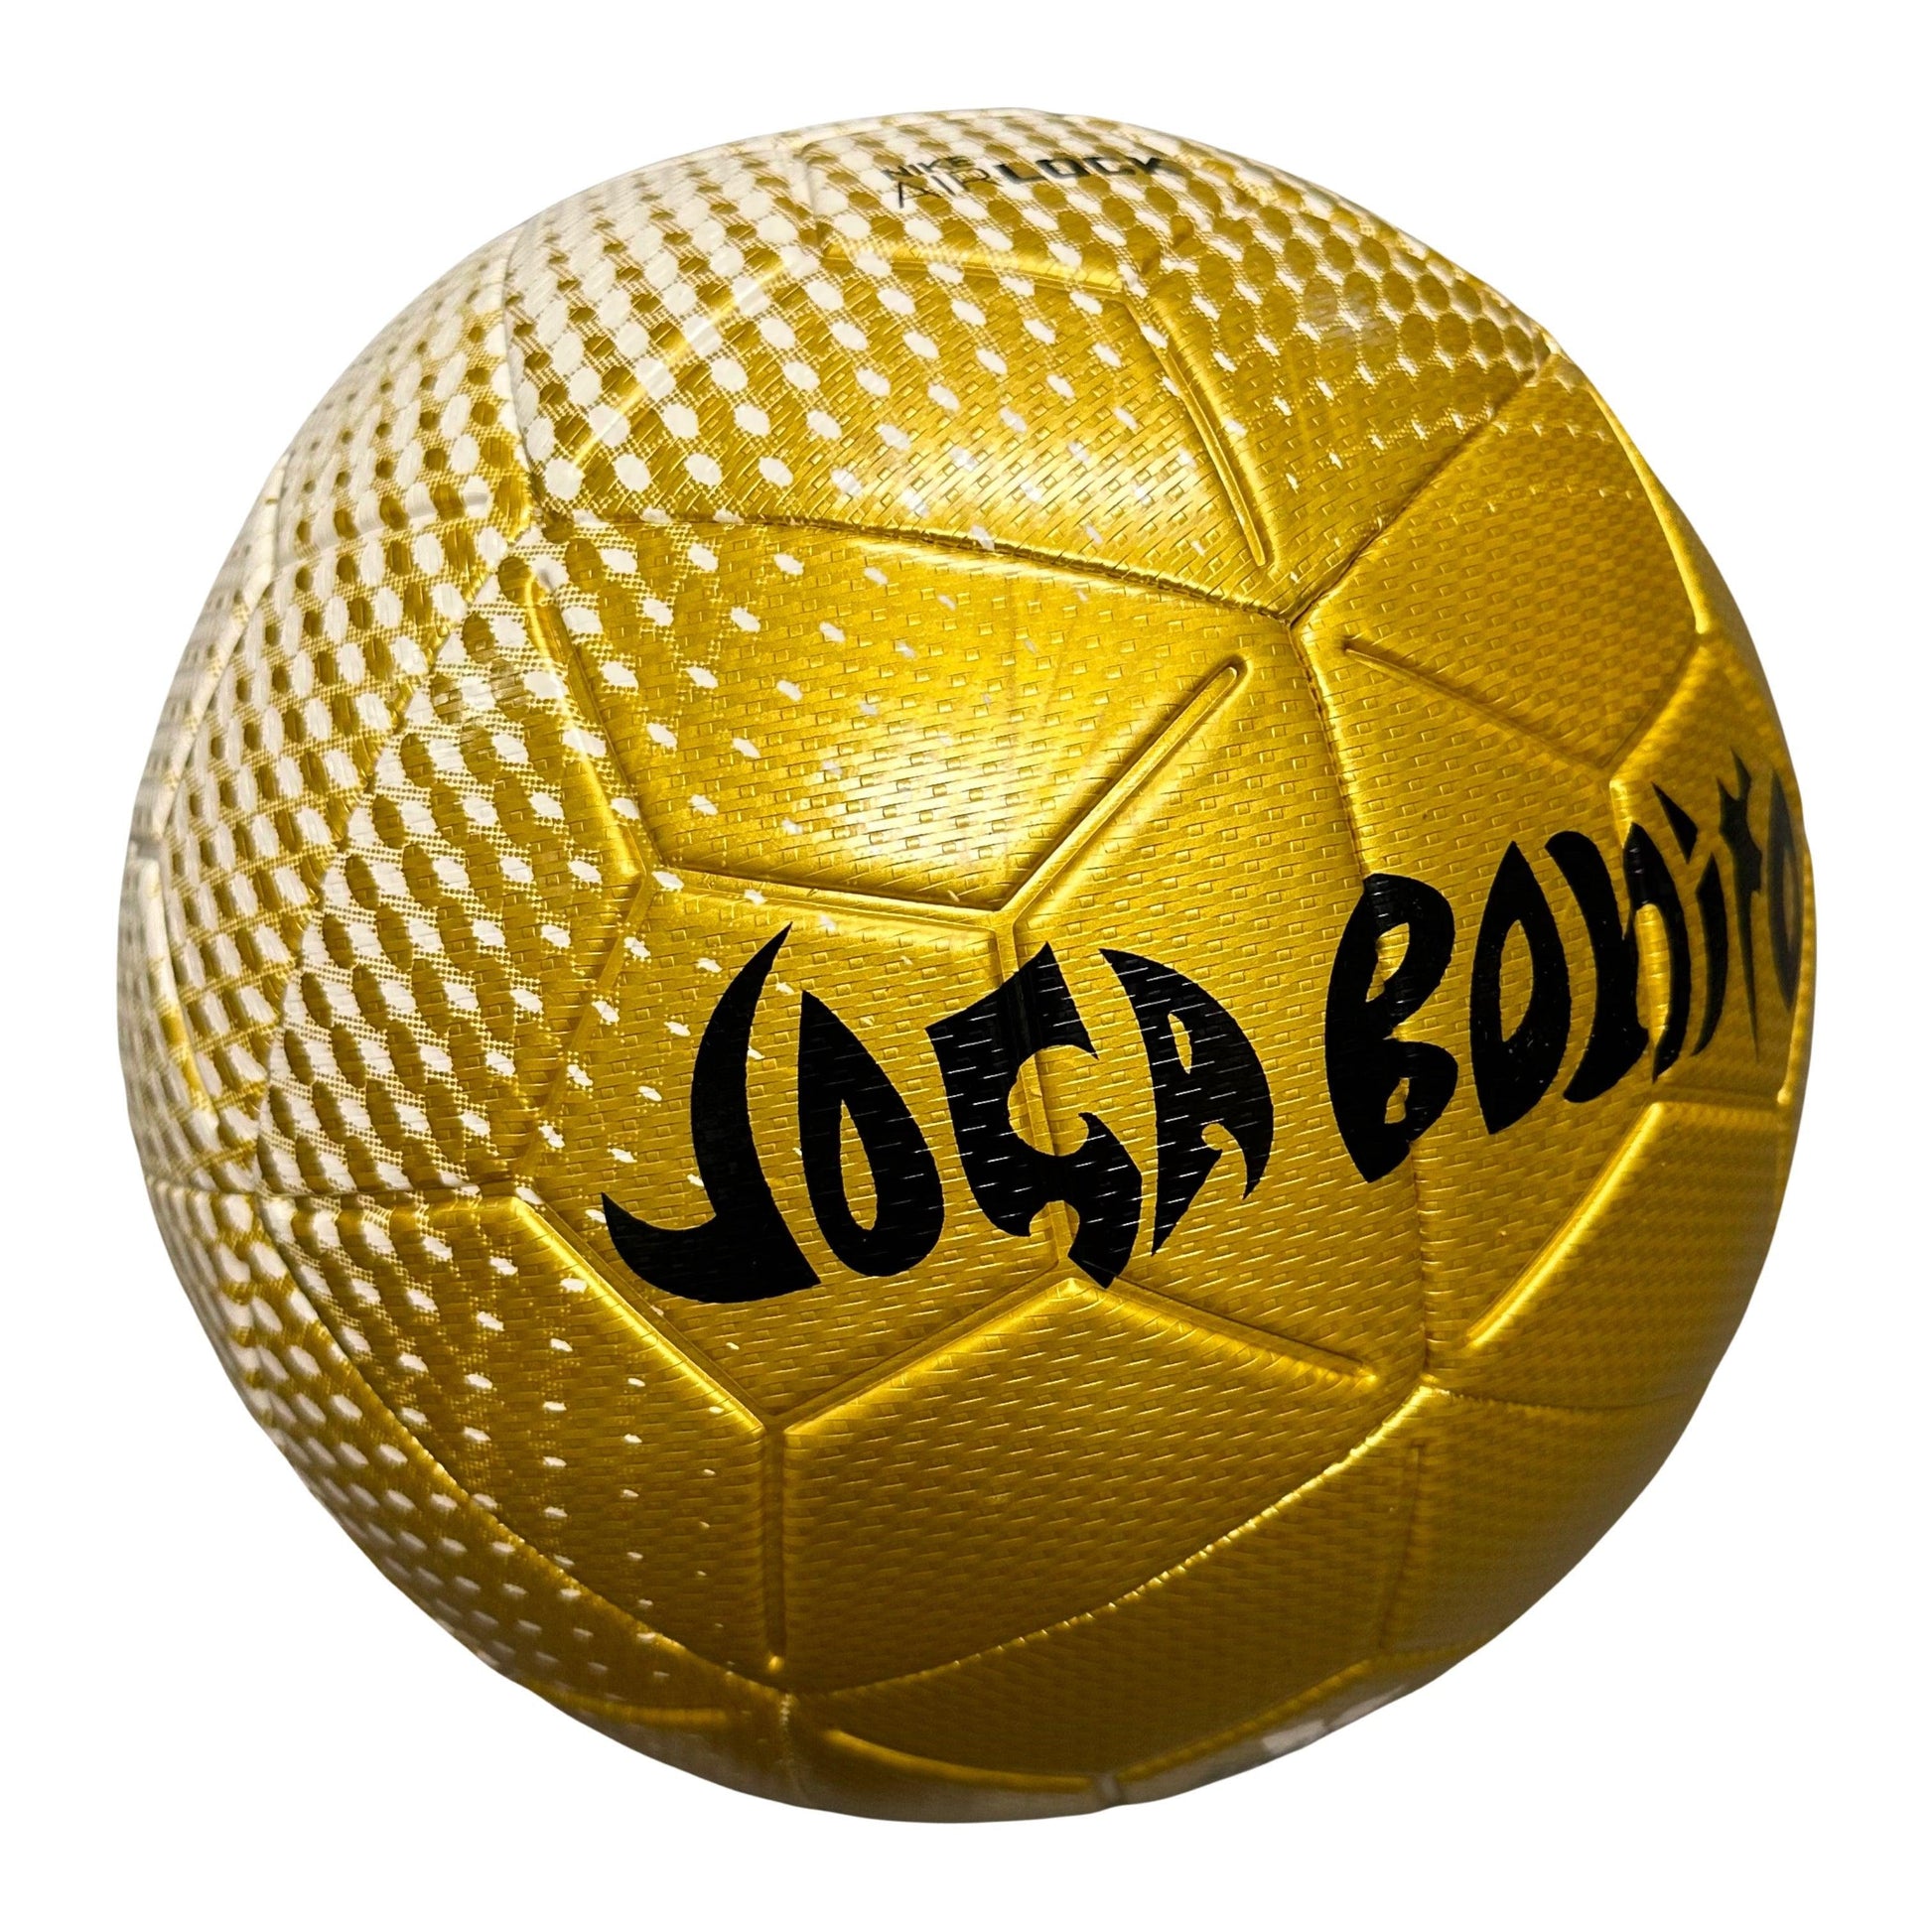 Nike Air lock Joga Bonito Ball ( 5 ) - Known Source